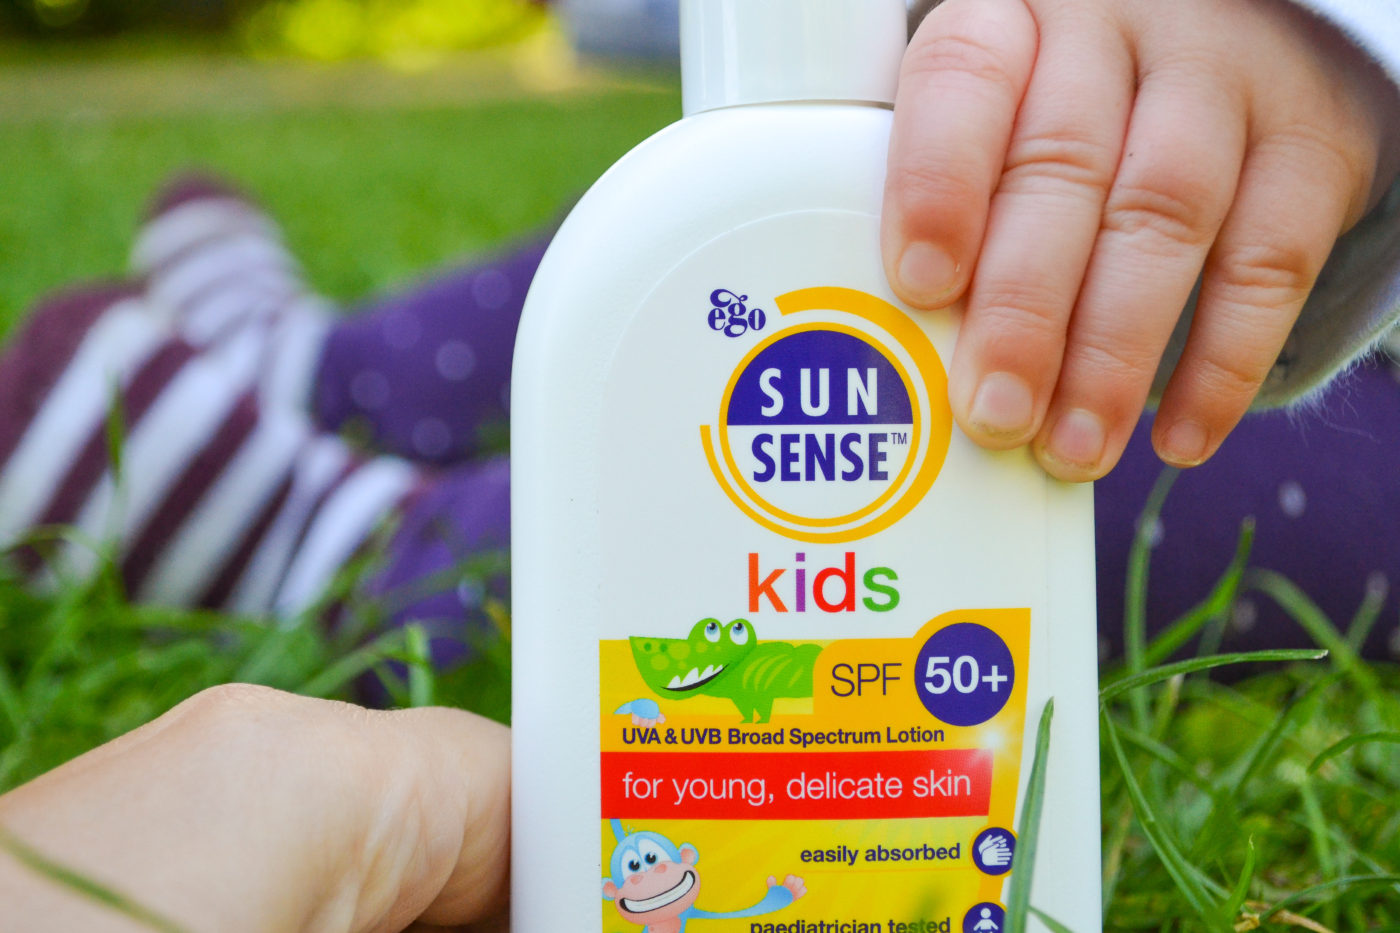 SunSense sunscreen for kids